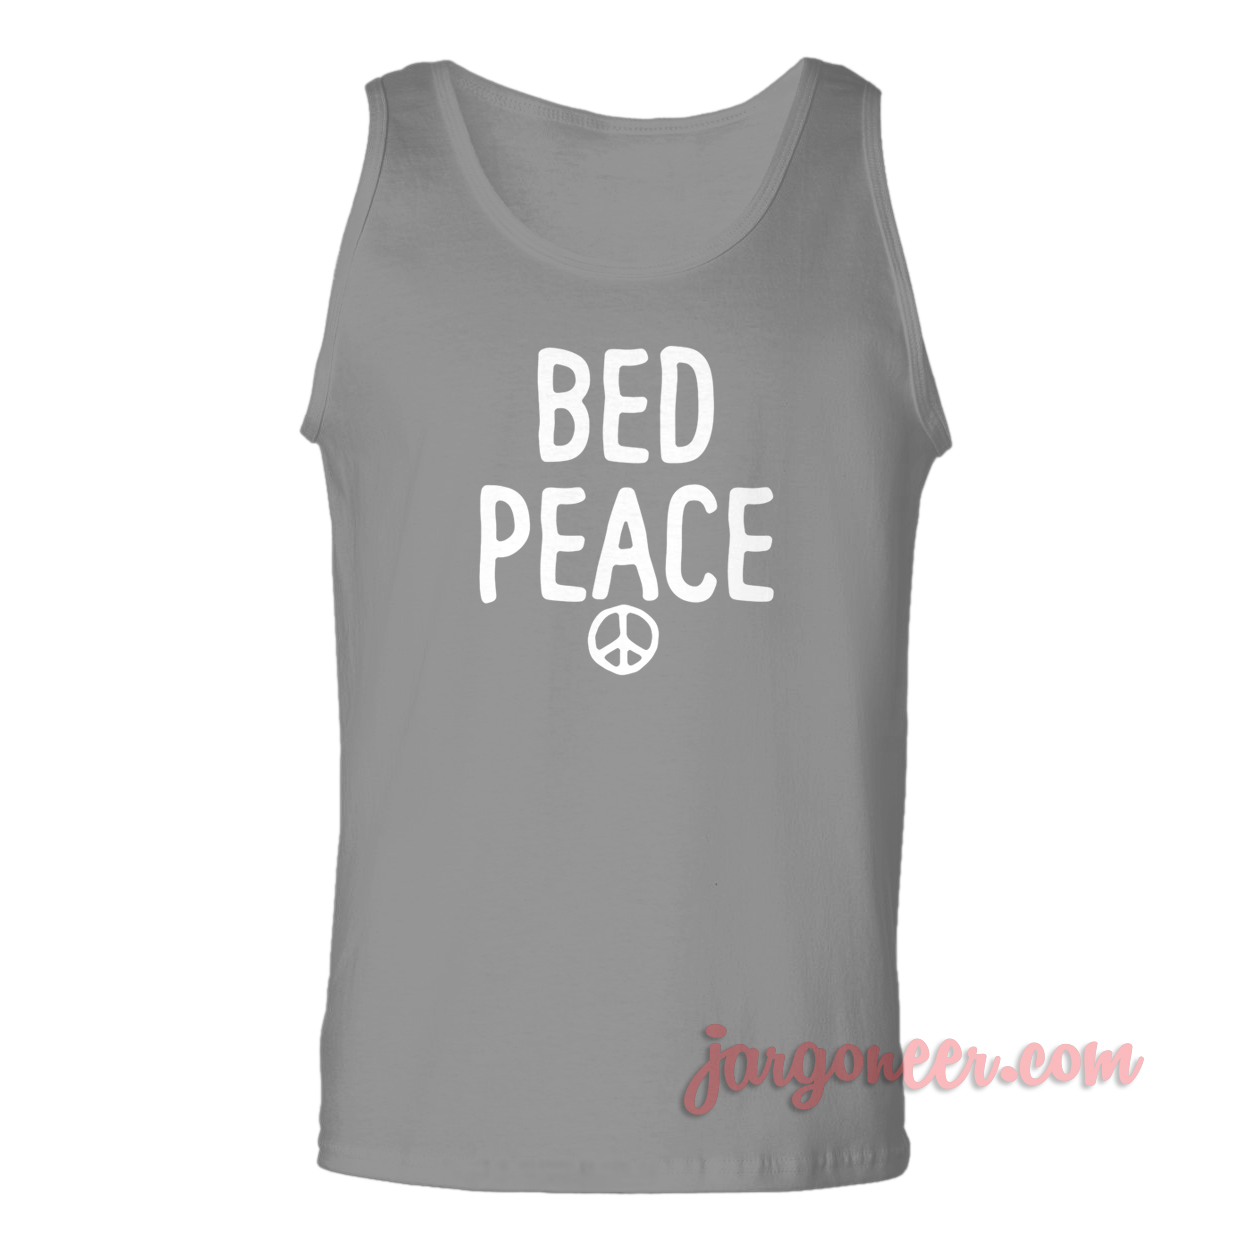 Bed Peace - Shop Unique Graphic Cool Shirt Designs